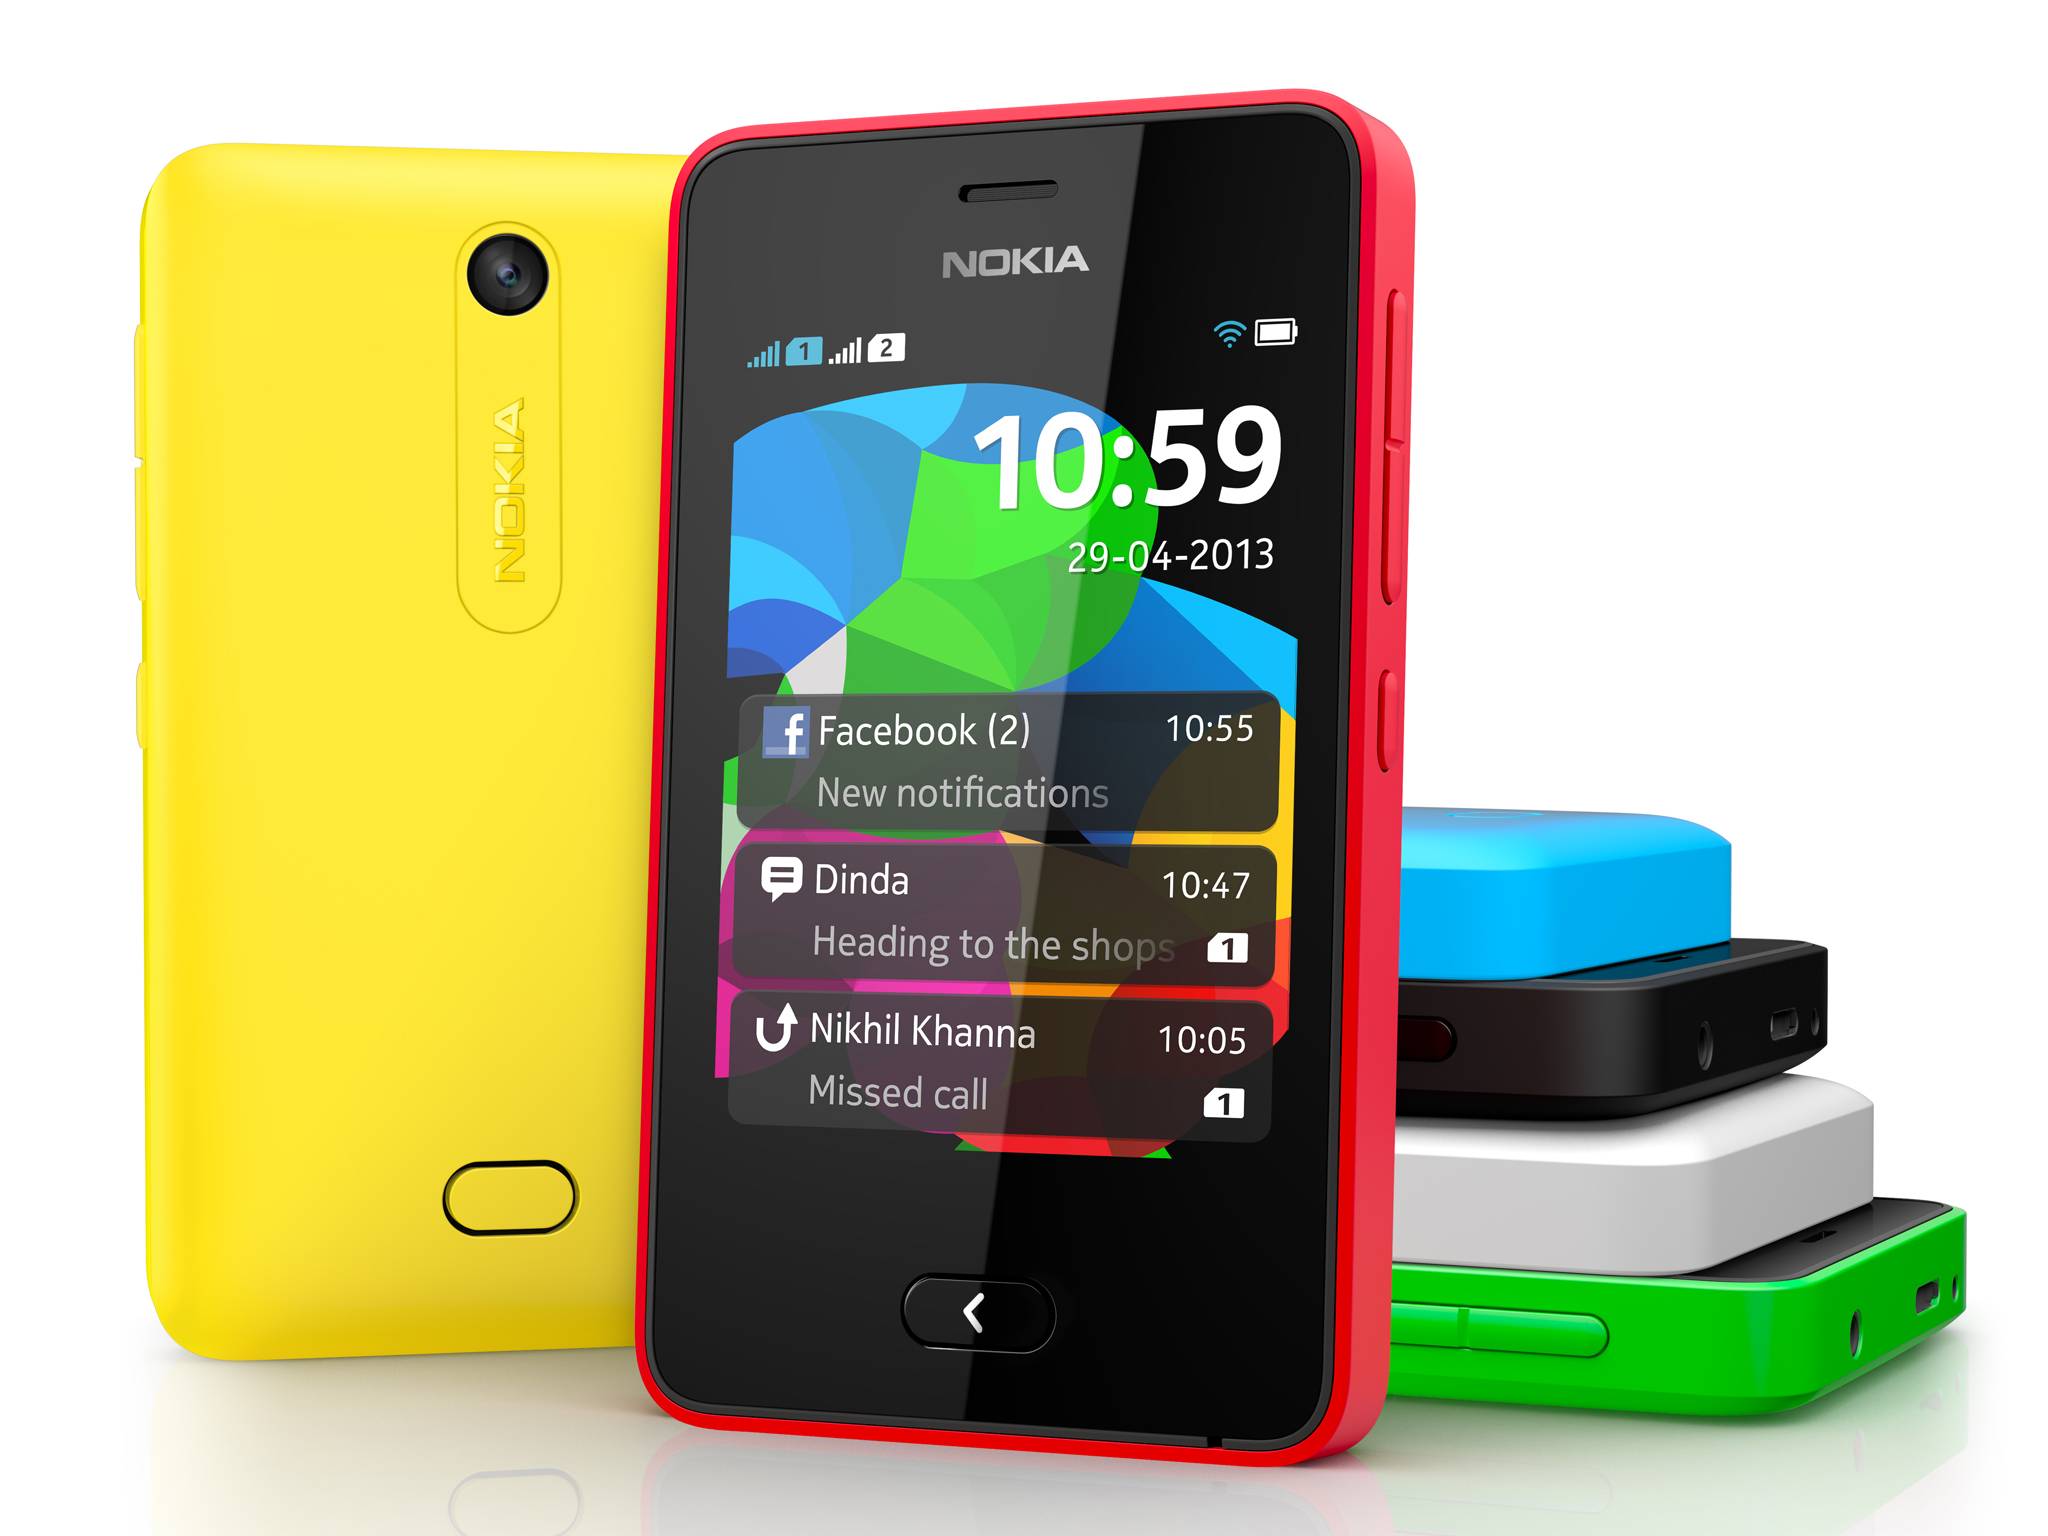 Nokia Asha’lara Bedava Müzik!